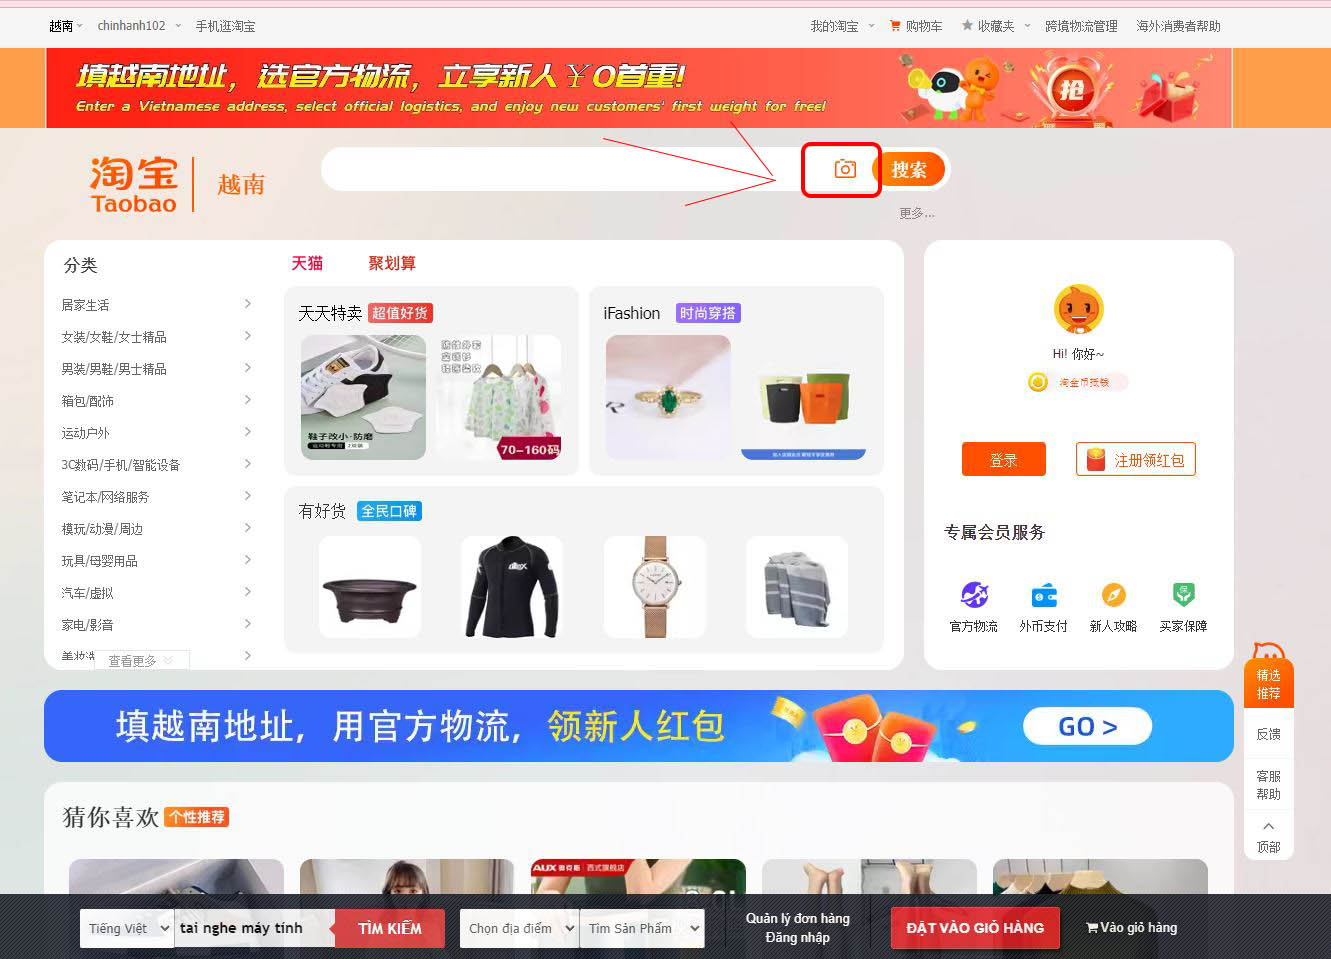 Cách tìm kiếm sản phẩm trên Taobao